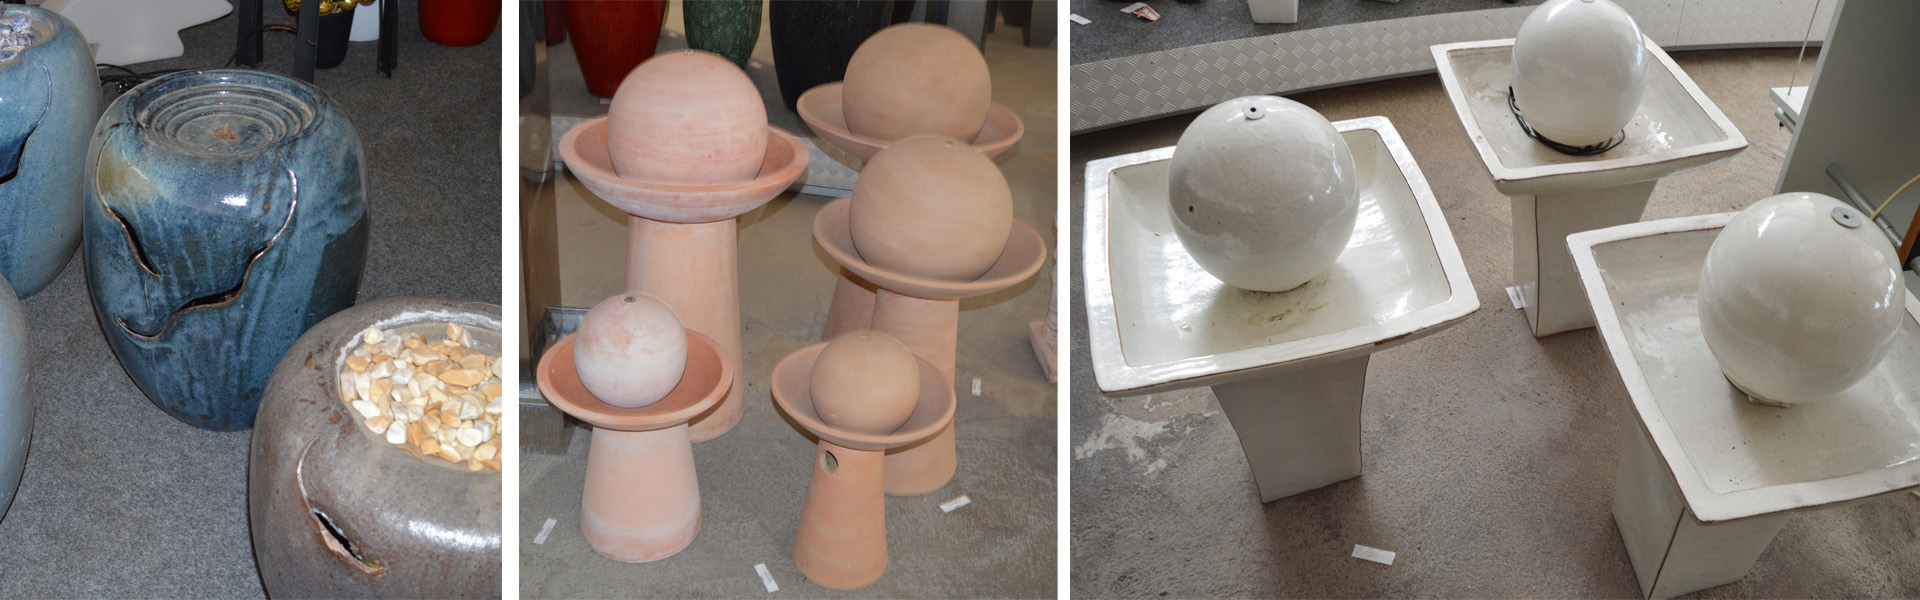 Keramikbrunnen -Terracottabrunnen in verschiedenen Größen und Ausführungen mit Pumpen und Zubehör. Für indoor/outdoor geeignet.